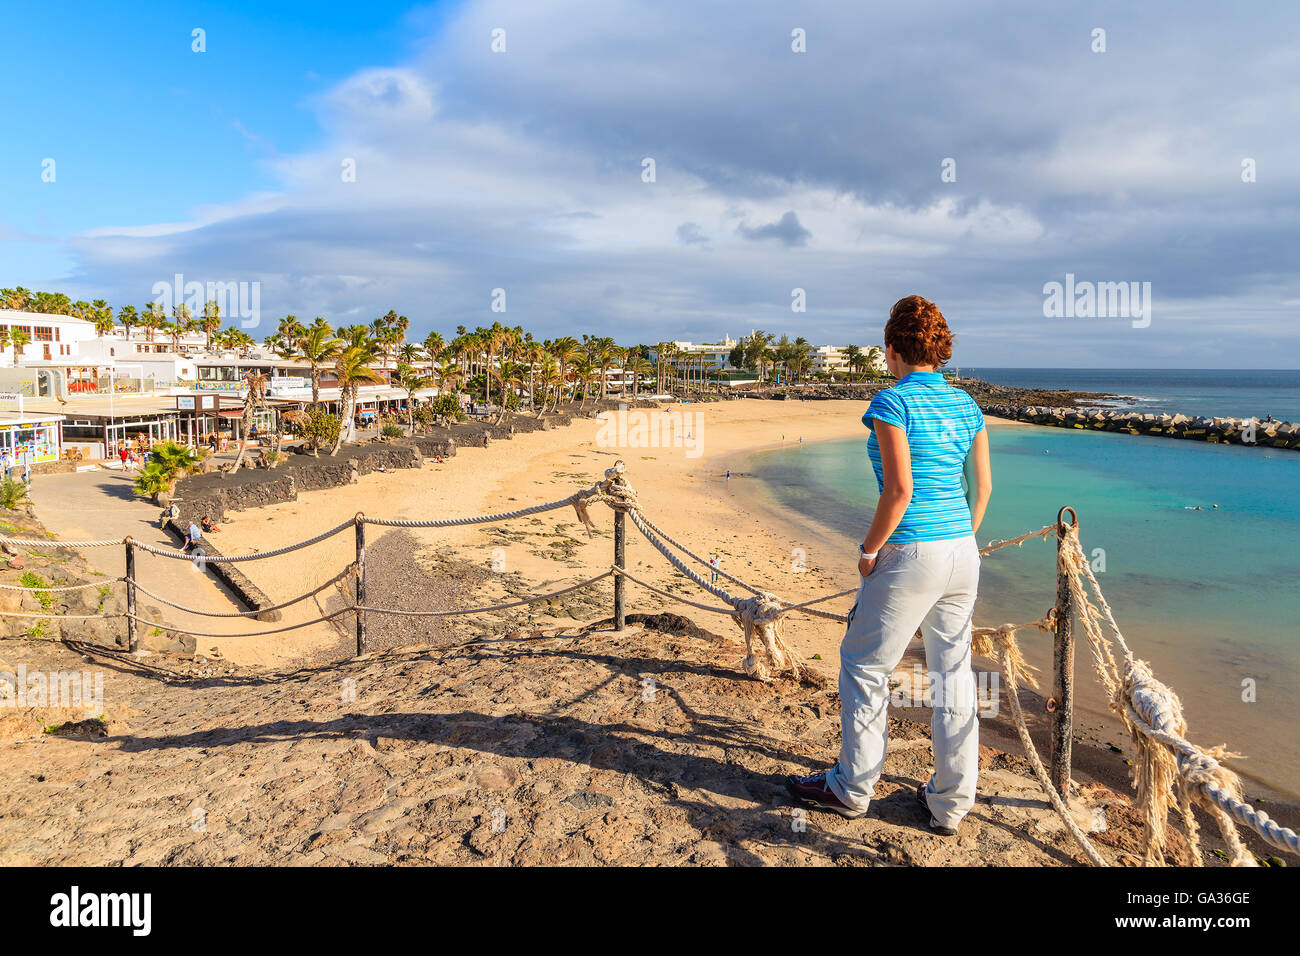 PLAYA BLANCA, Lanzarote Island - Jan 16, 2015: il giovane turista guardando Flamingo Beach dal punto di vista. Le isole Canarie sono meta di vacanze per i turisti europei nel periodo invernale. Foto Stock